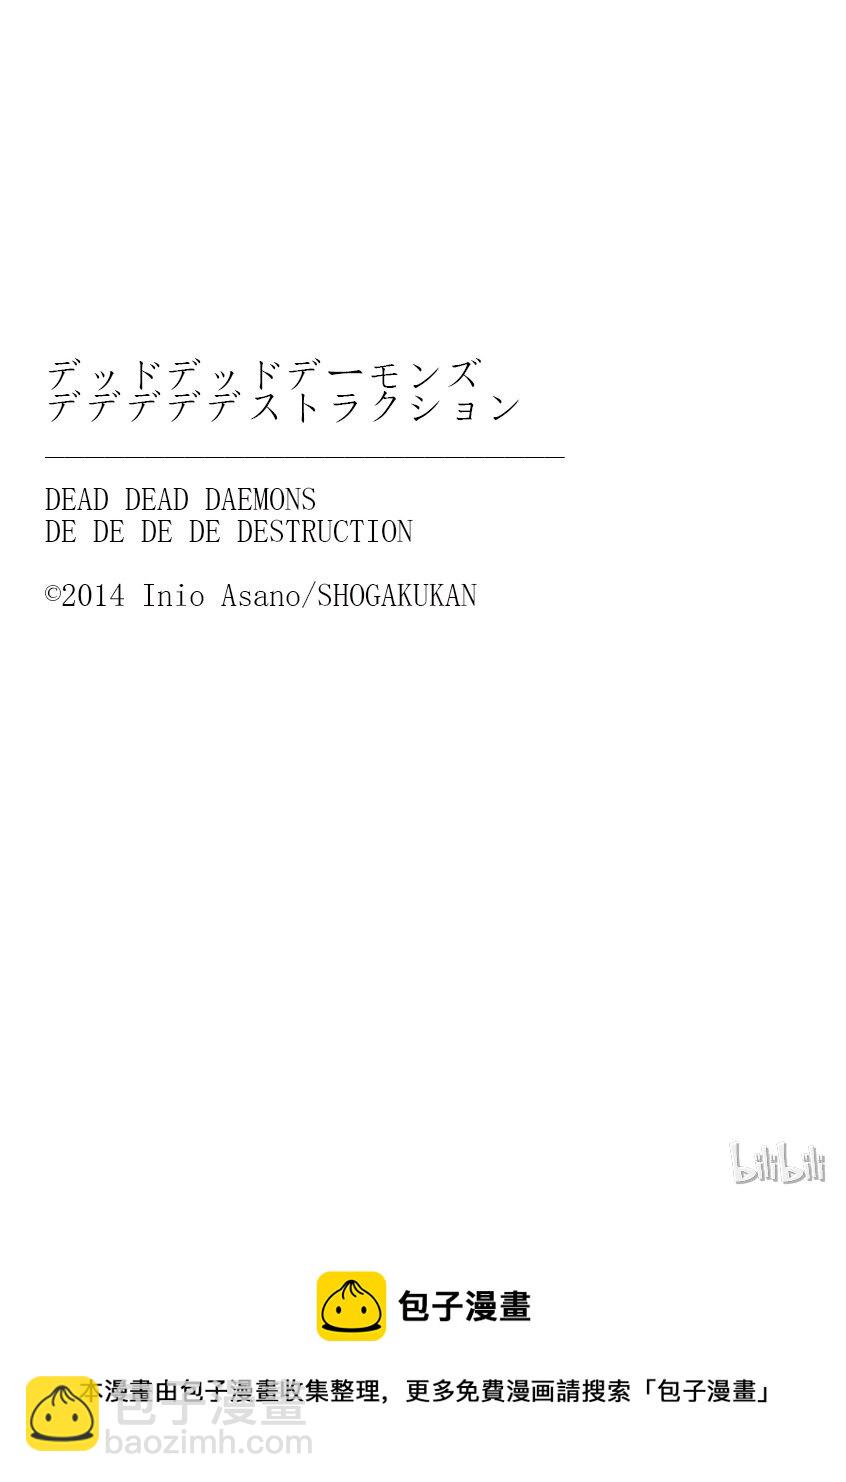 惡魔的破壞 DEAD DEAD DEMON'S DEDEDEDE DESTRUCTION - 002 - 5